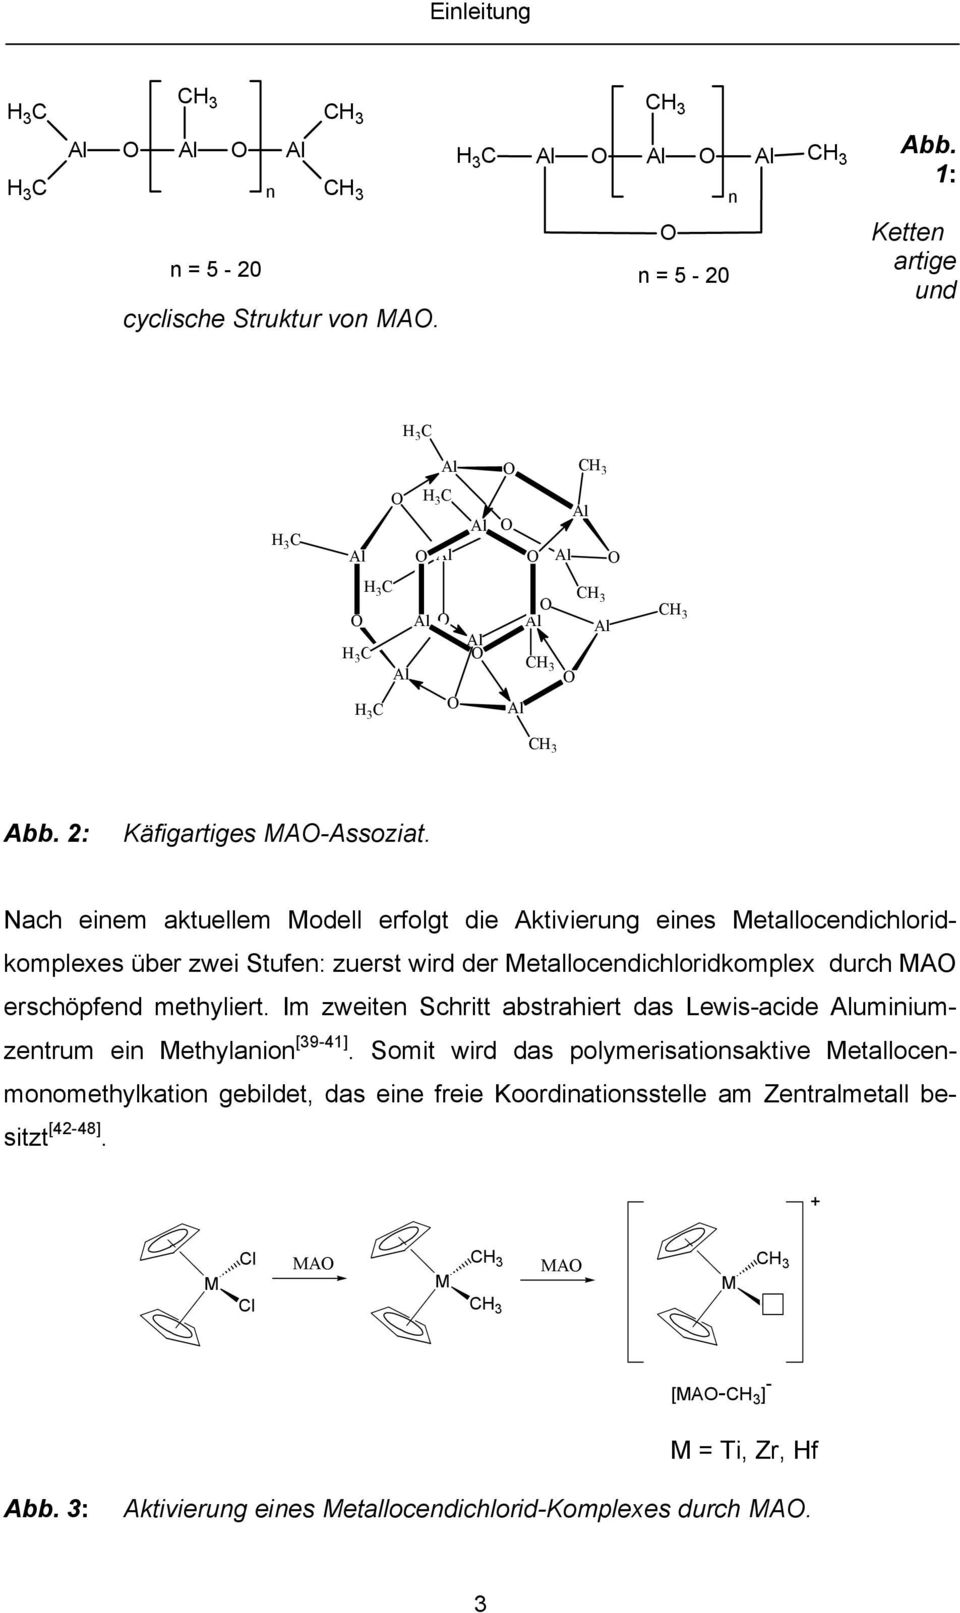 ach einem aktuellem Modell erfolgt die Aktivierung eines Metallocendichloridkomplexes über zwei Stufen: zuerst wird der Metallocendichloridkomplex durch MAO erschöpfend methyliert.